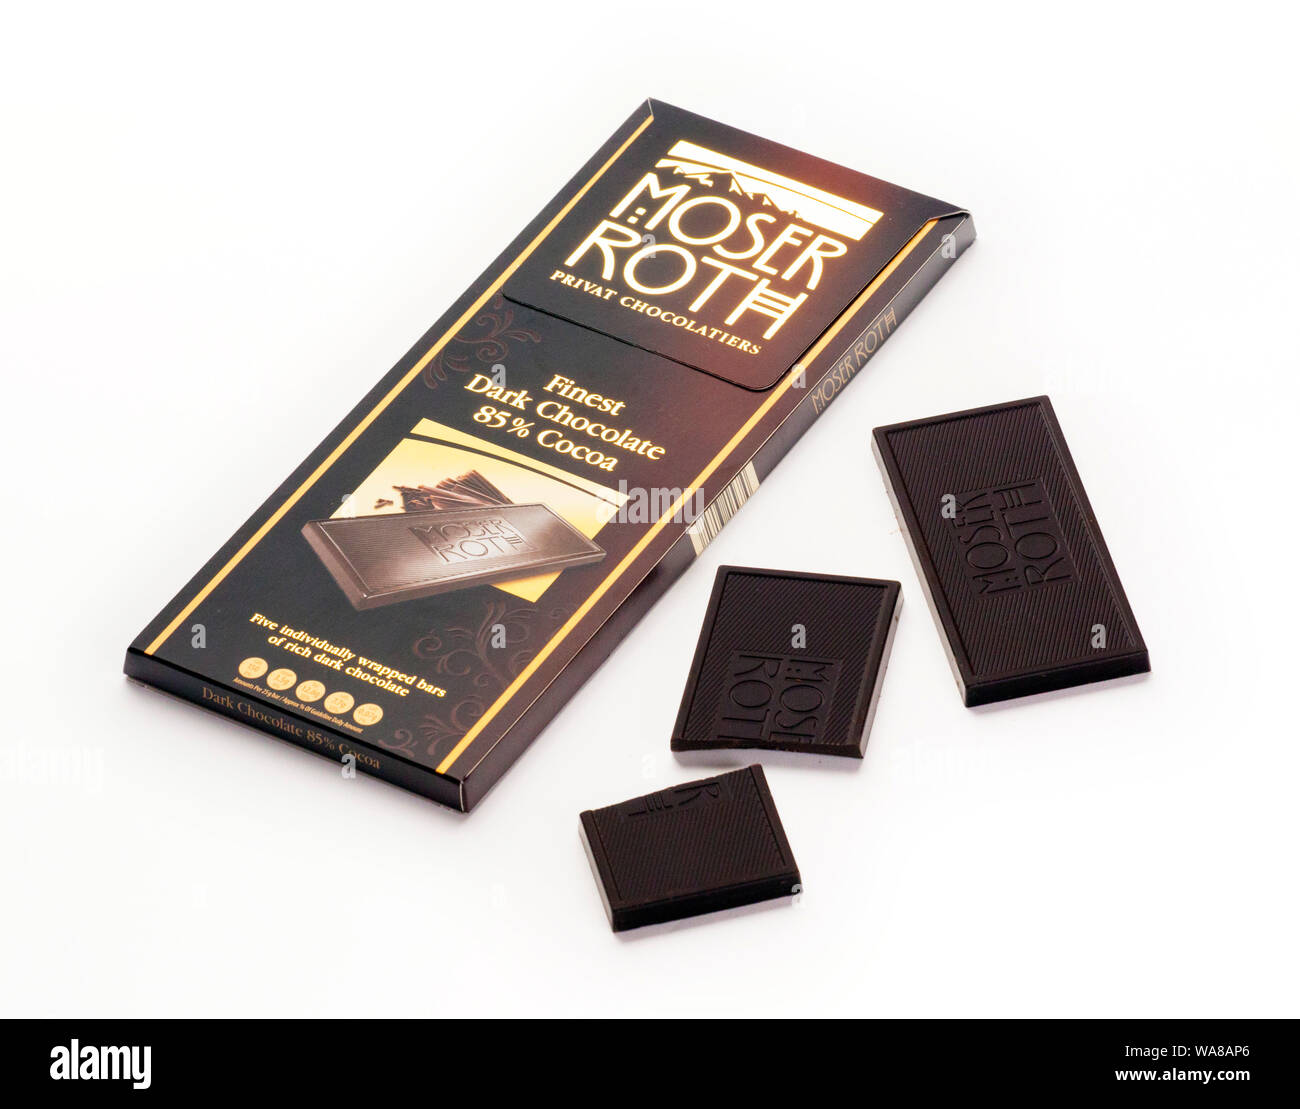 Moser Roth dunkle Schokolade ausschließlich von Aldi verkauft. Stockfoto